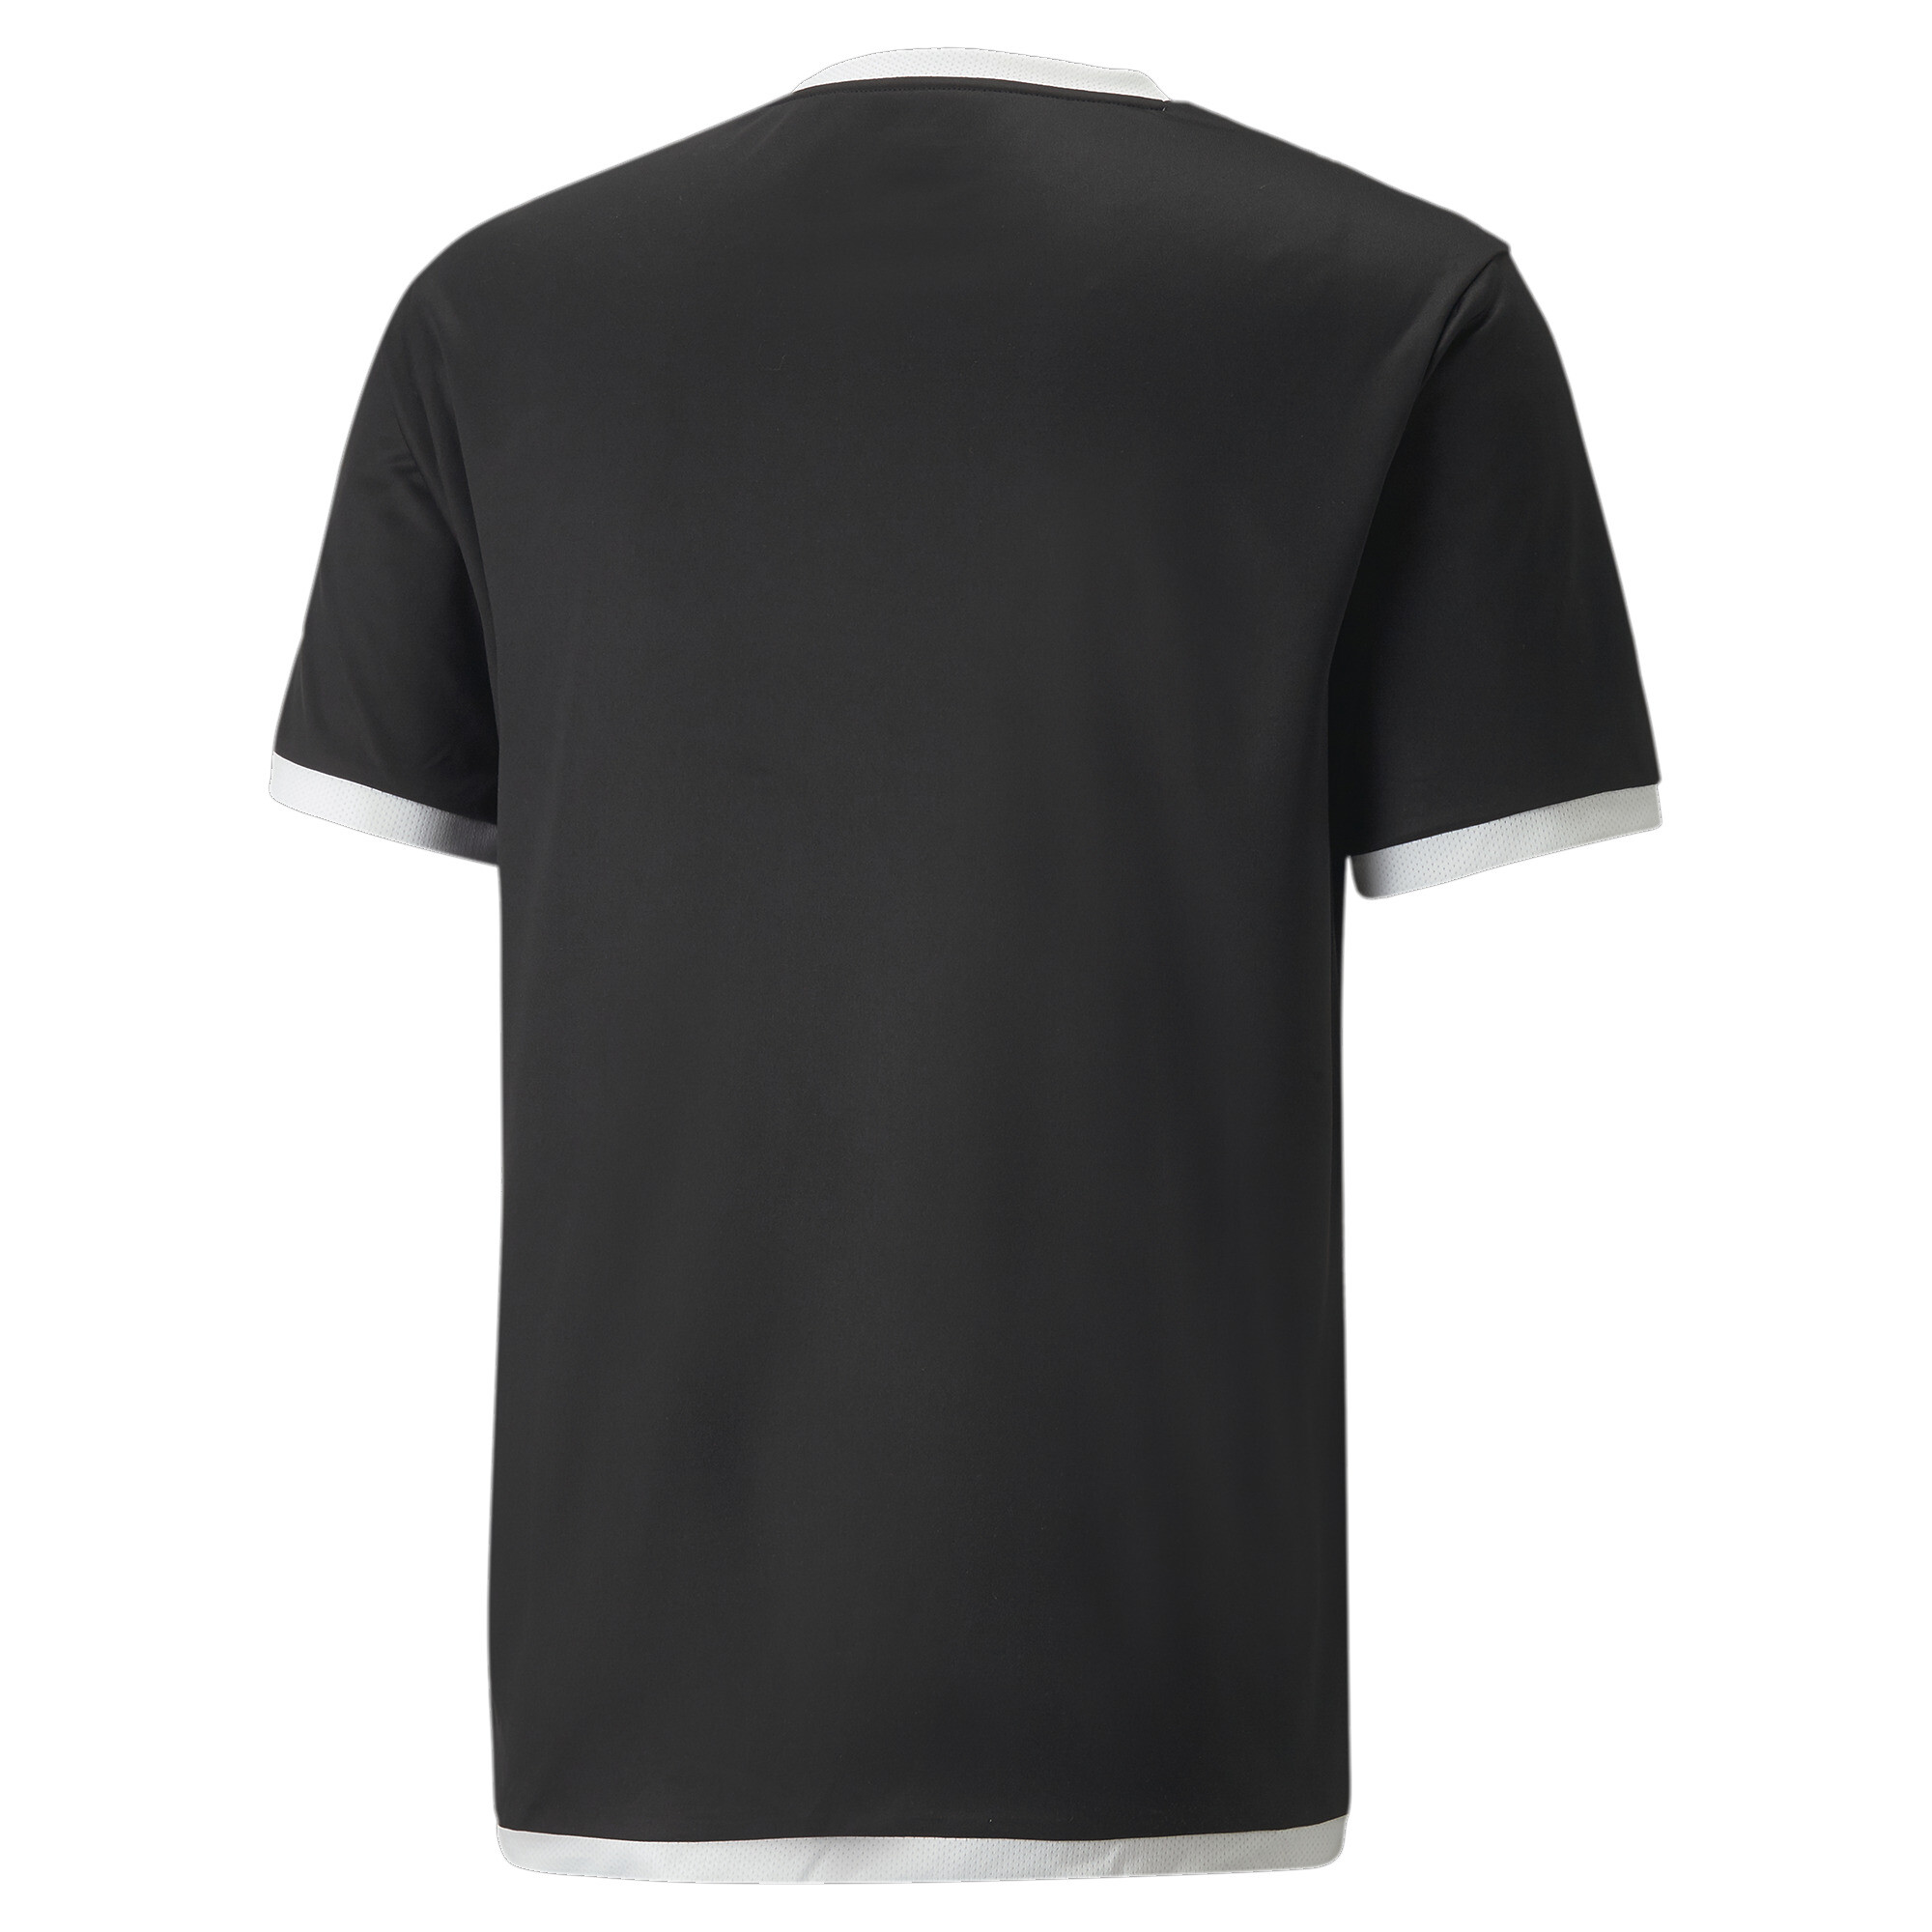 Men's PUMA TeamLIGA Football Jersey In Black, Size Medium